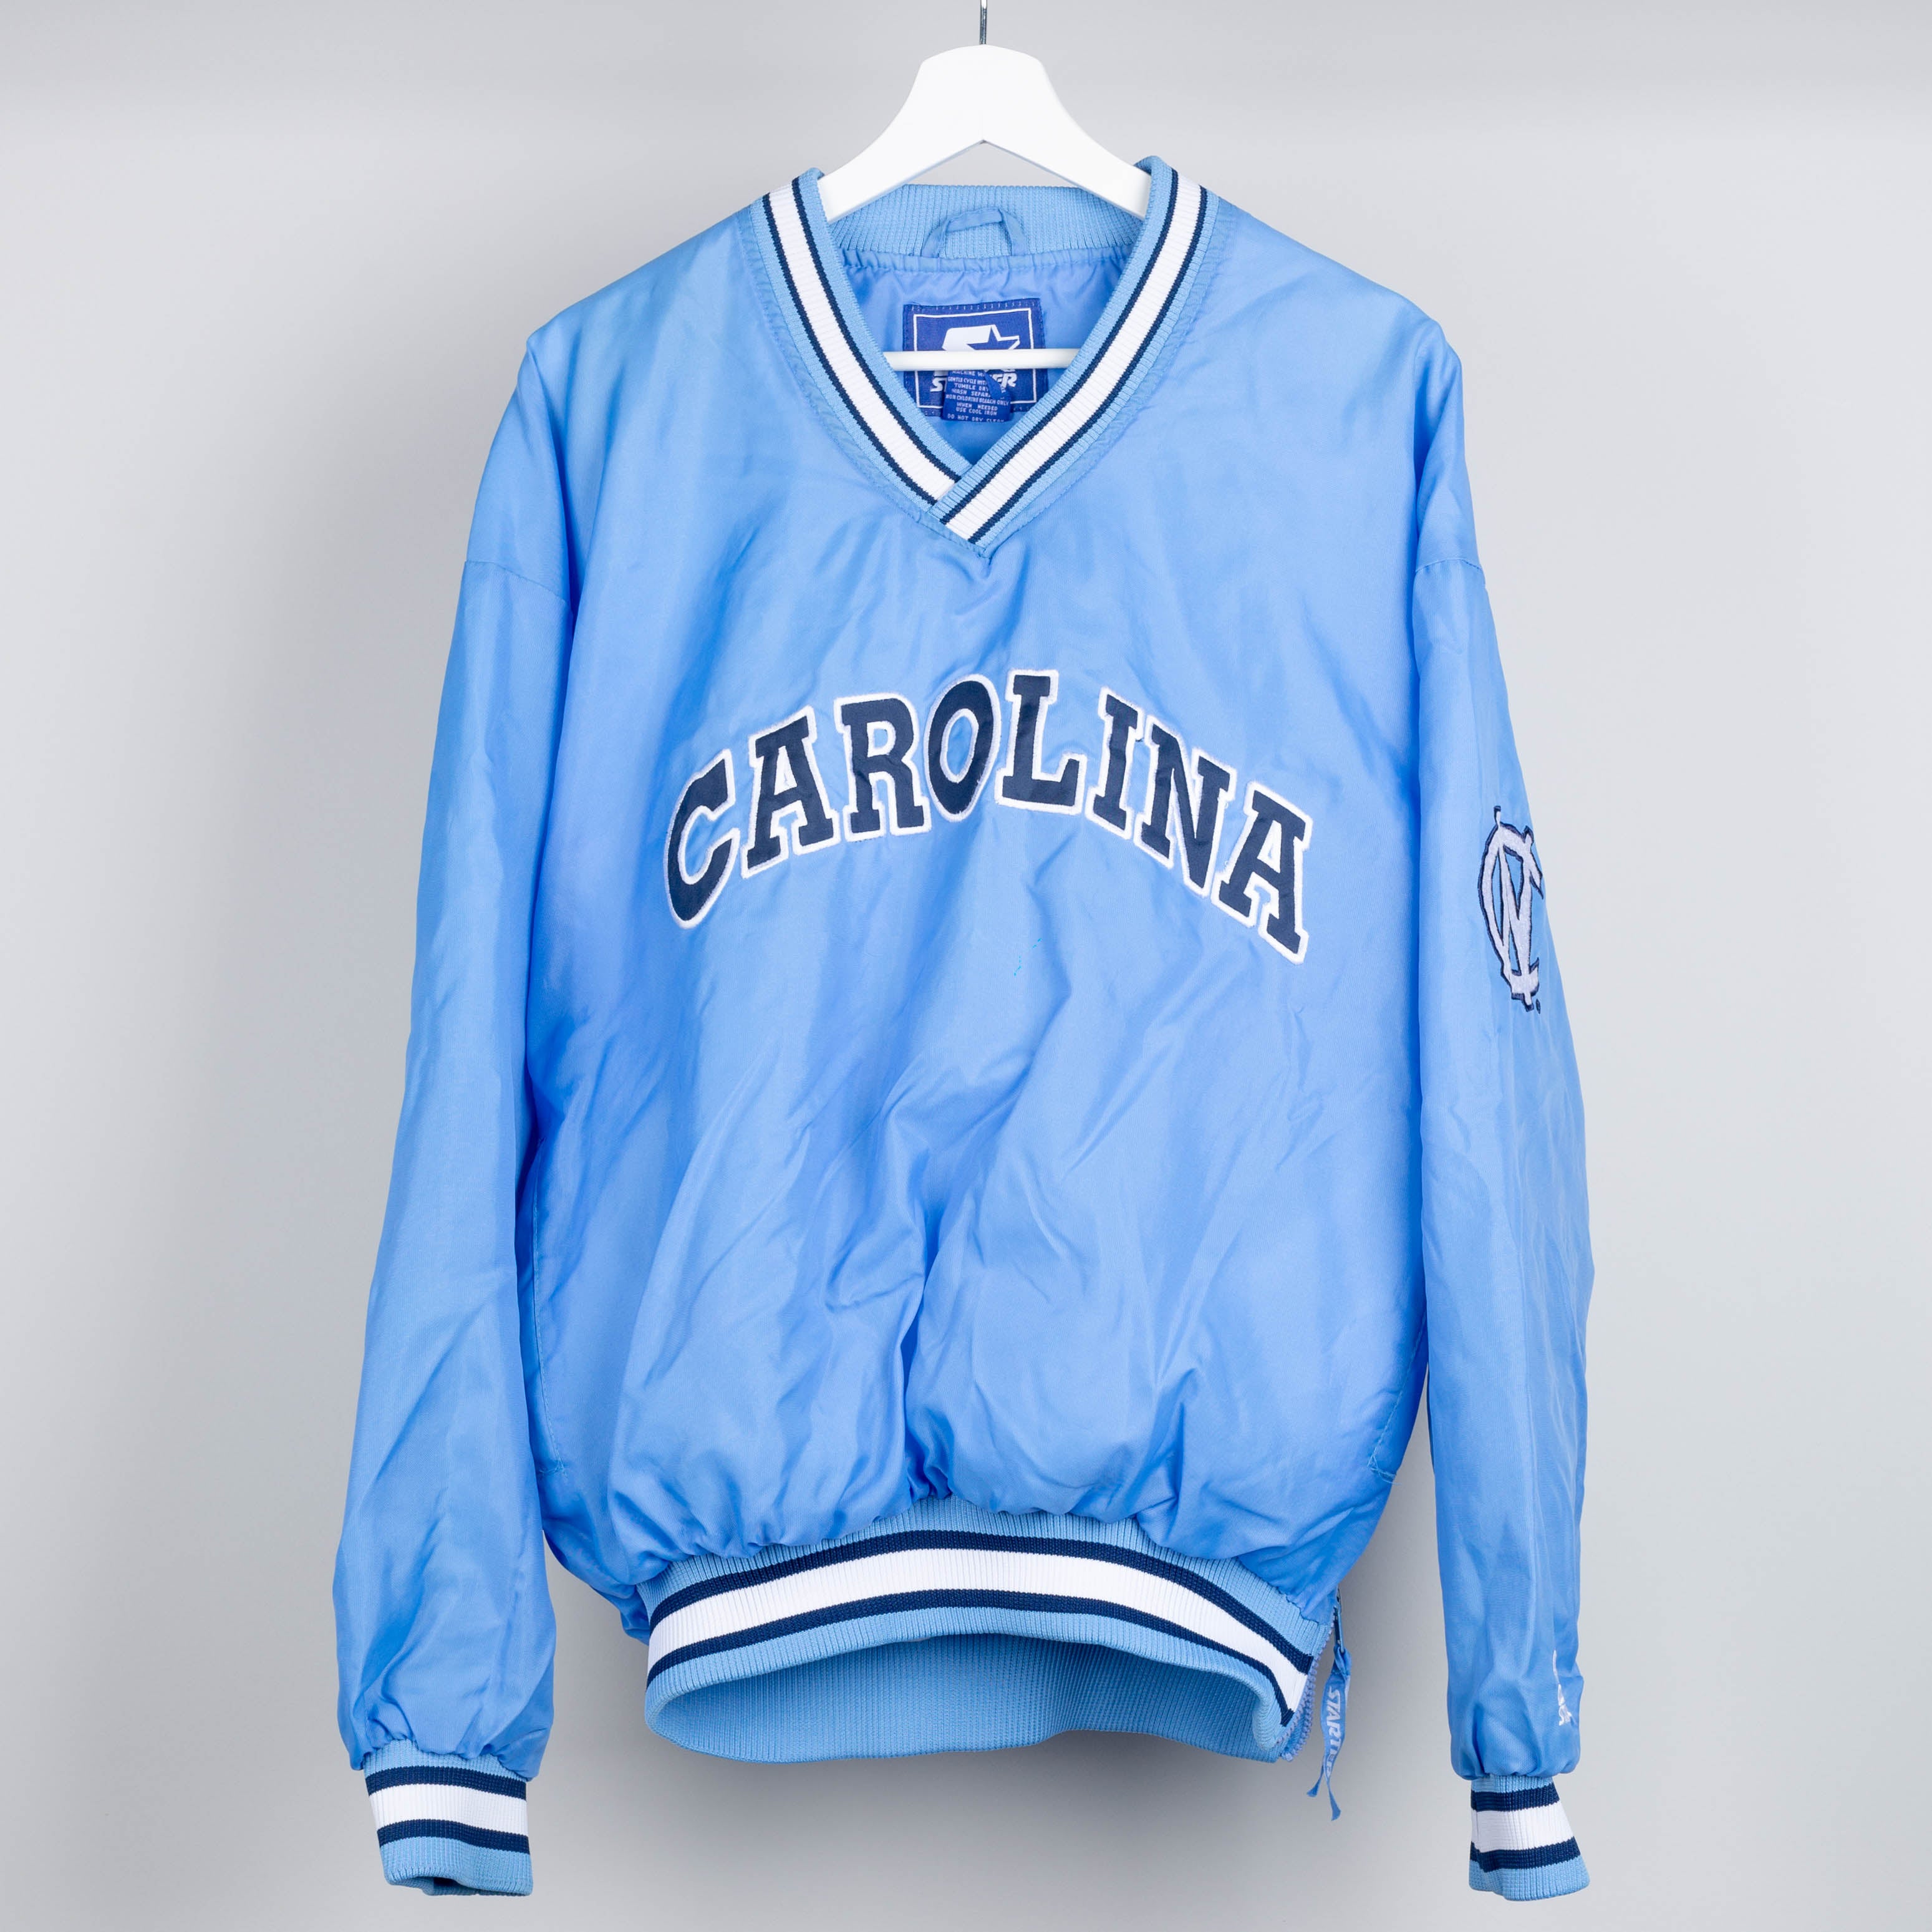 90's North Carolina Warmup Jacket Size L